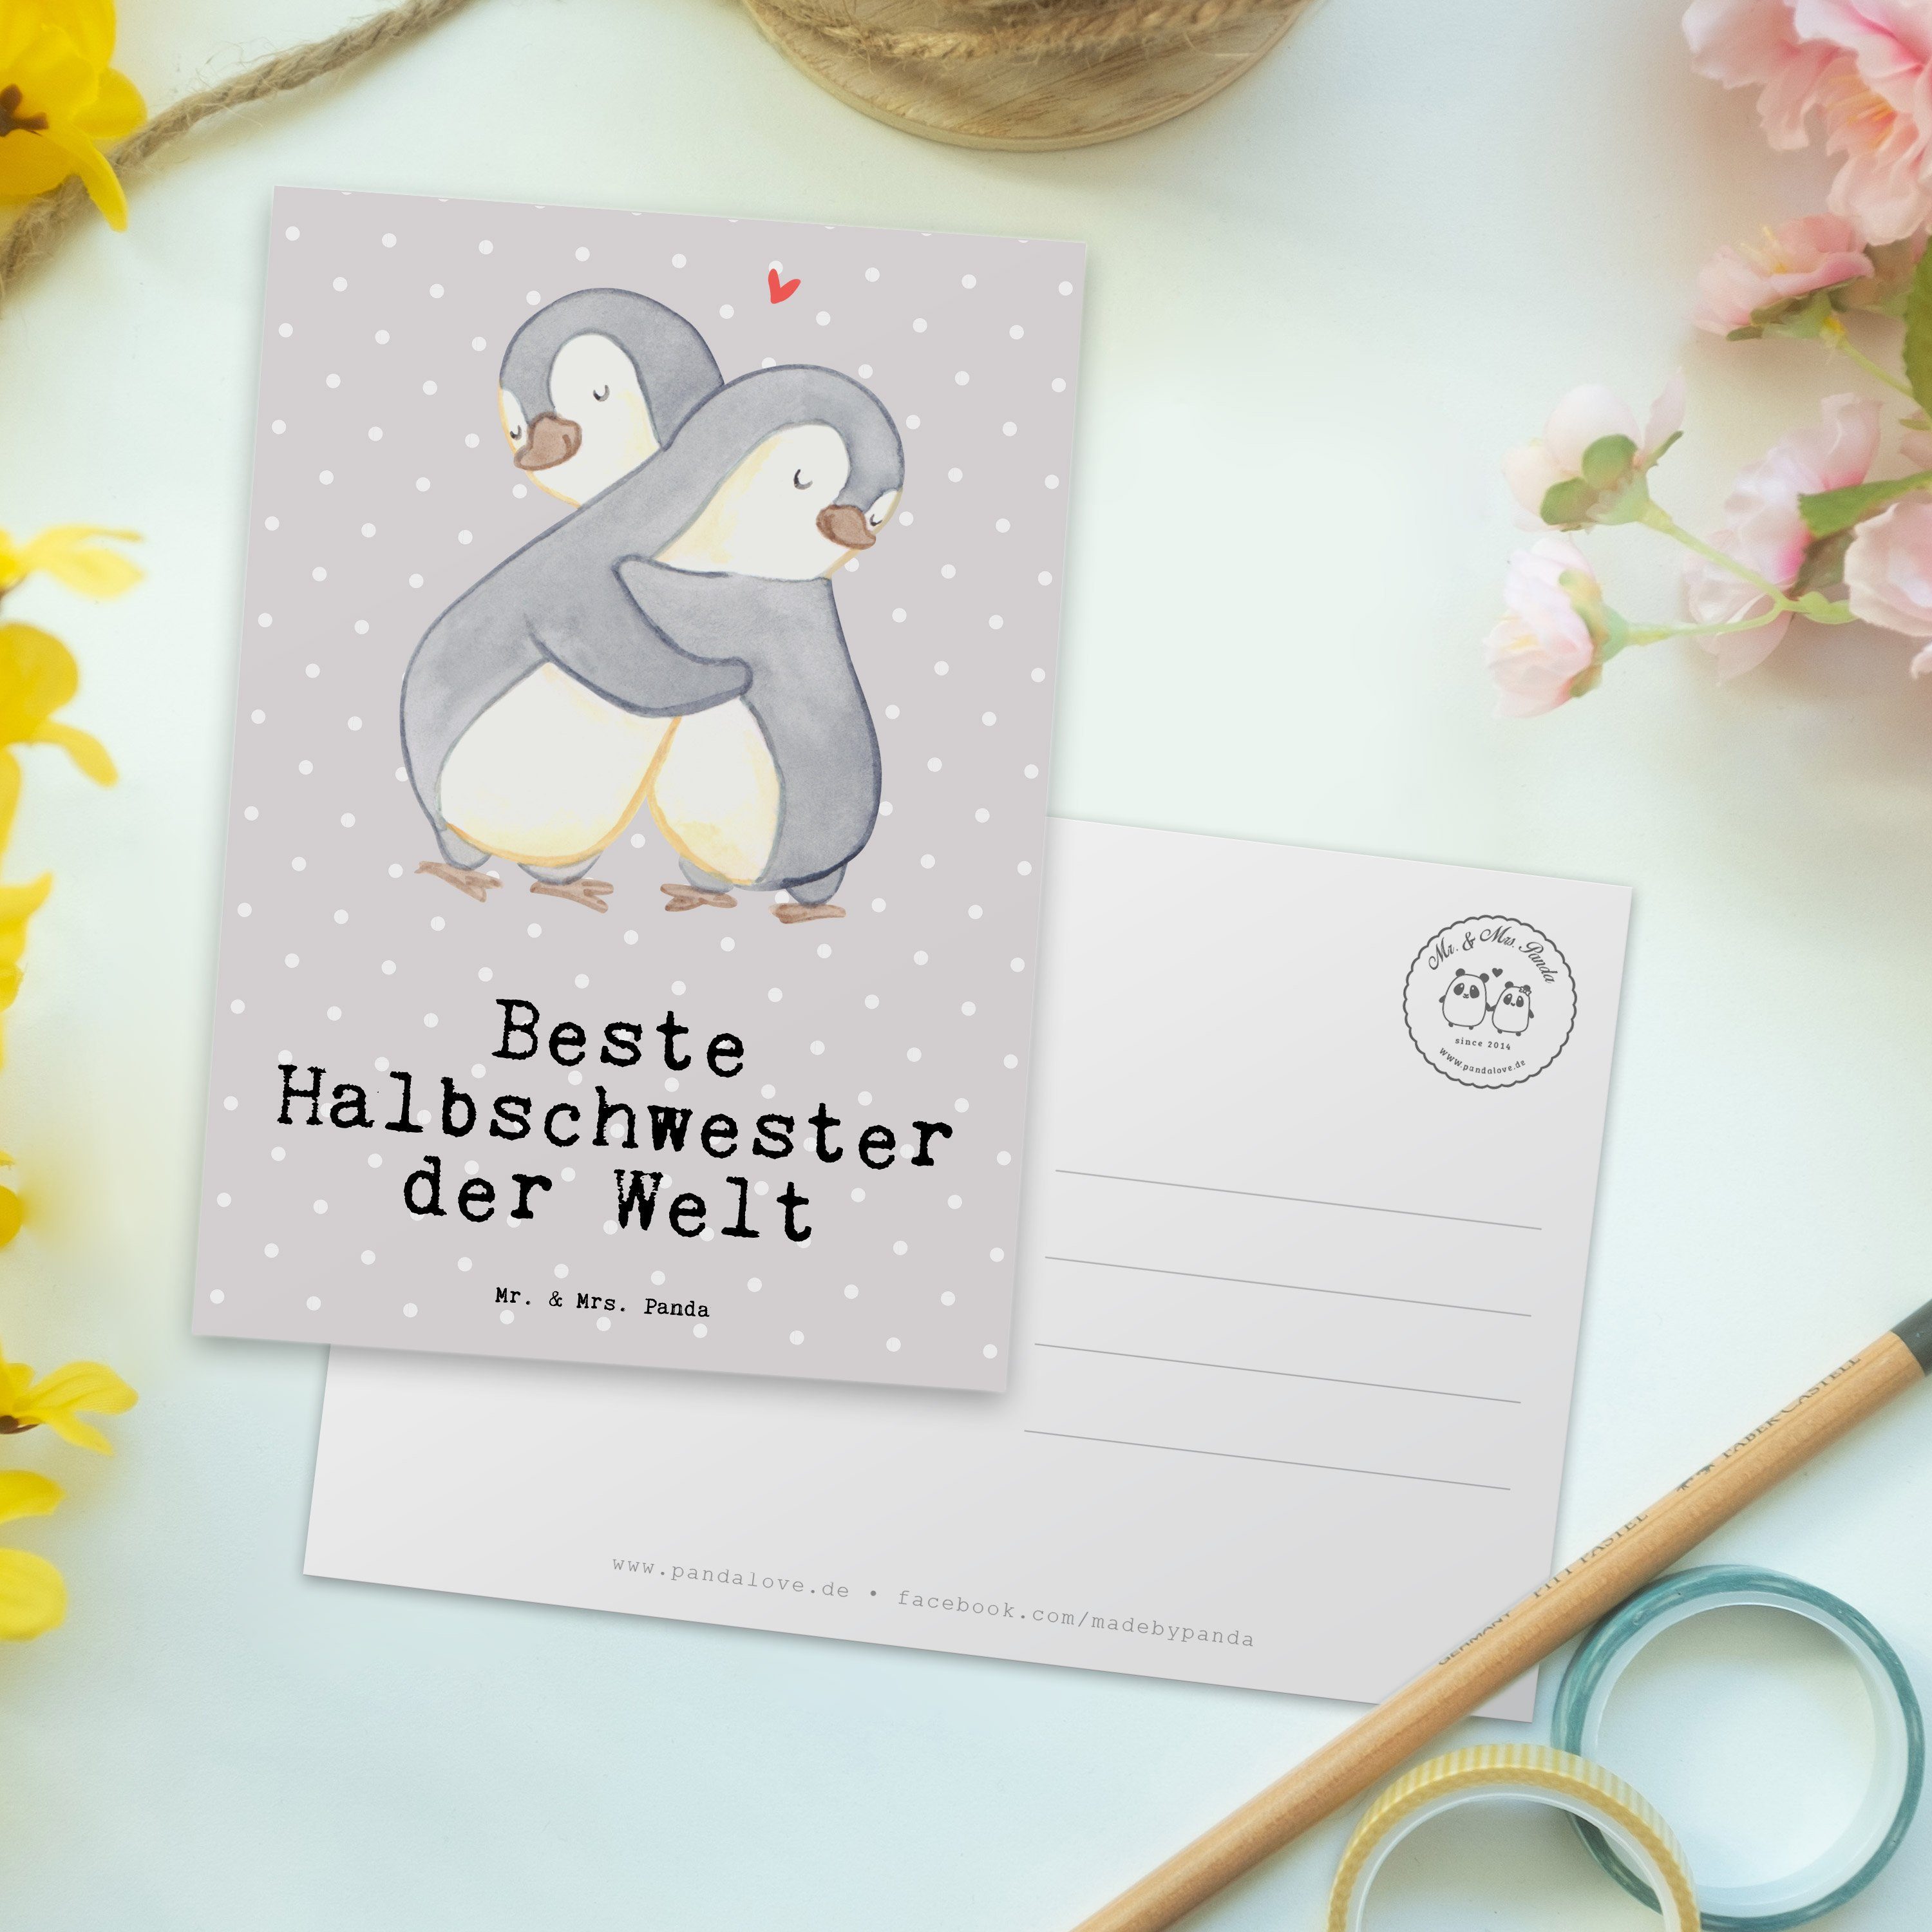 Grau Pinguin Einla Mrs. Panda Geschenk, Postkarte Pastell - - der Welt Halbschwester Beste Mr. &